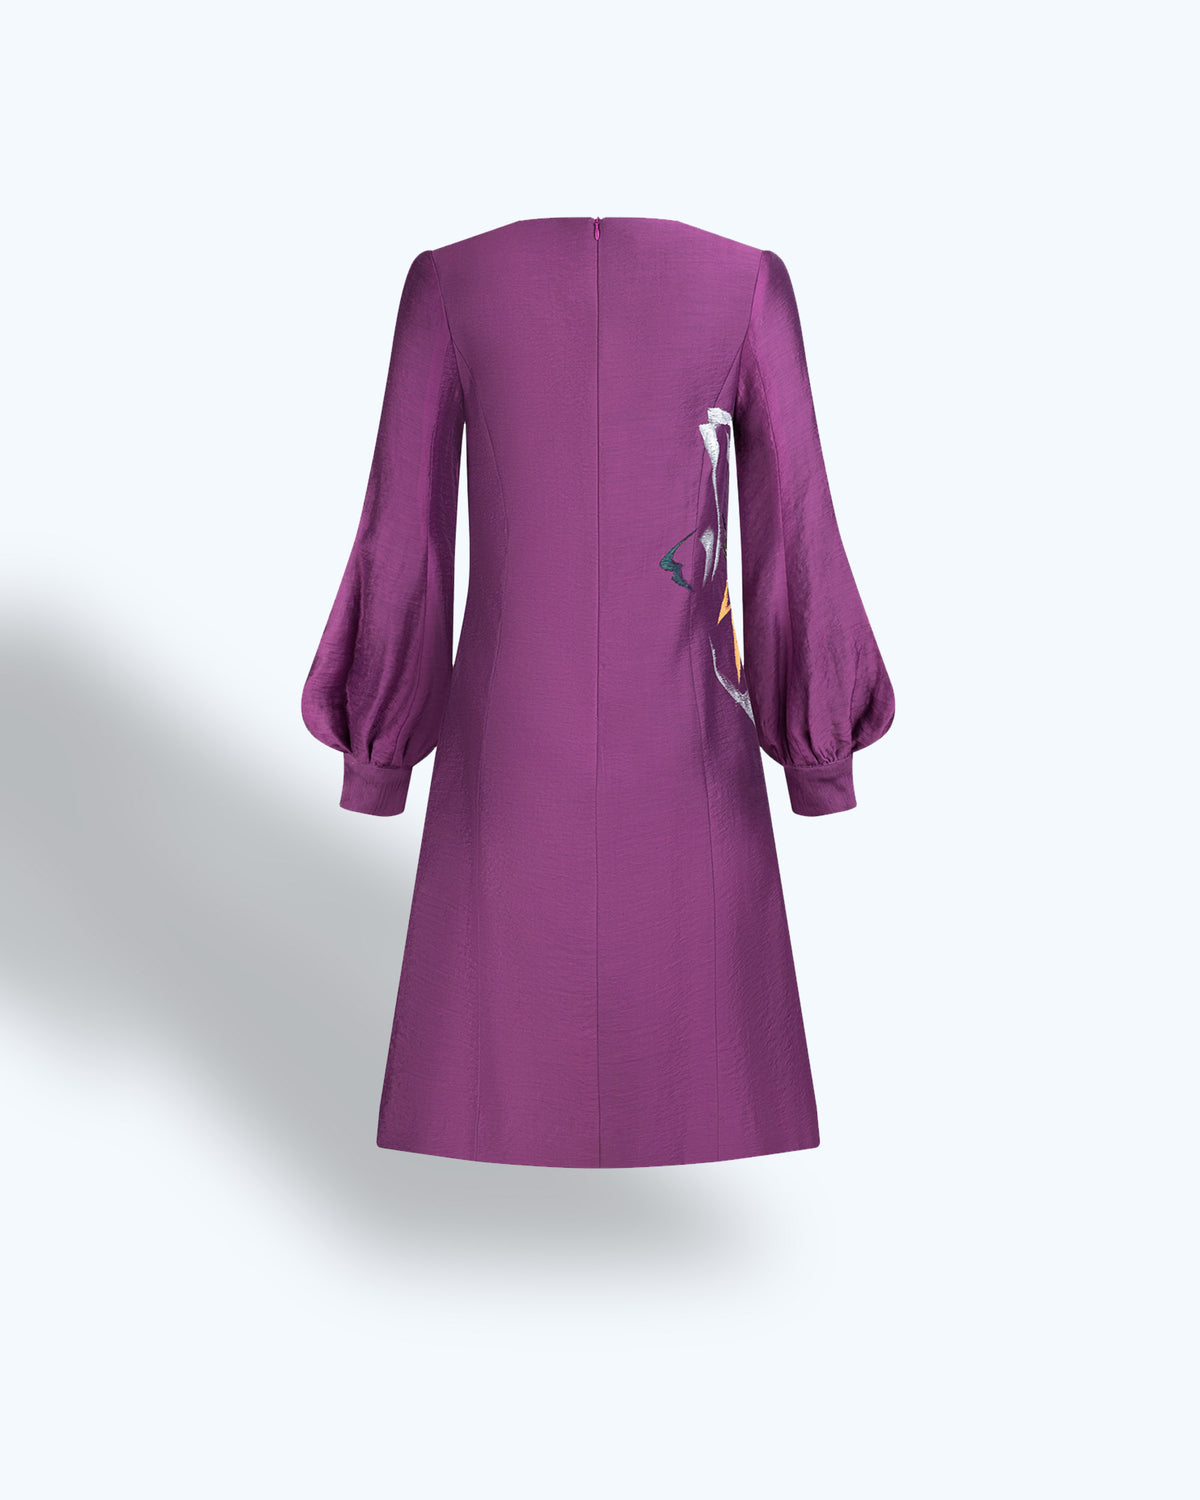 Amaryllis-painted Puff Sleeve Purple Mini Dress